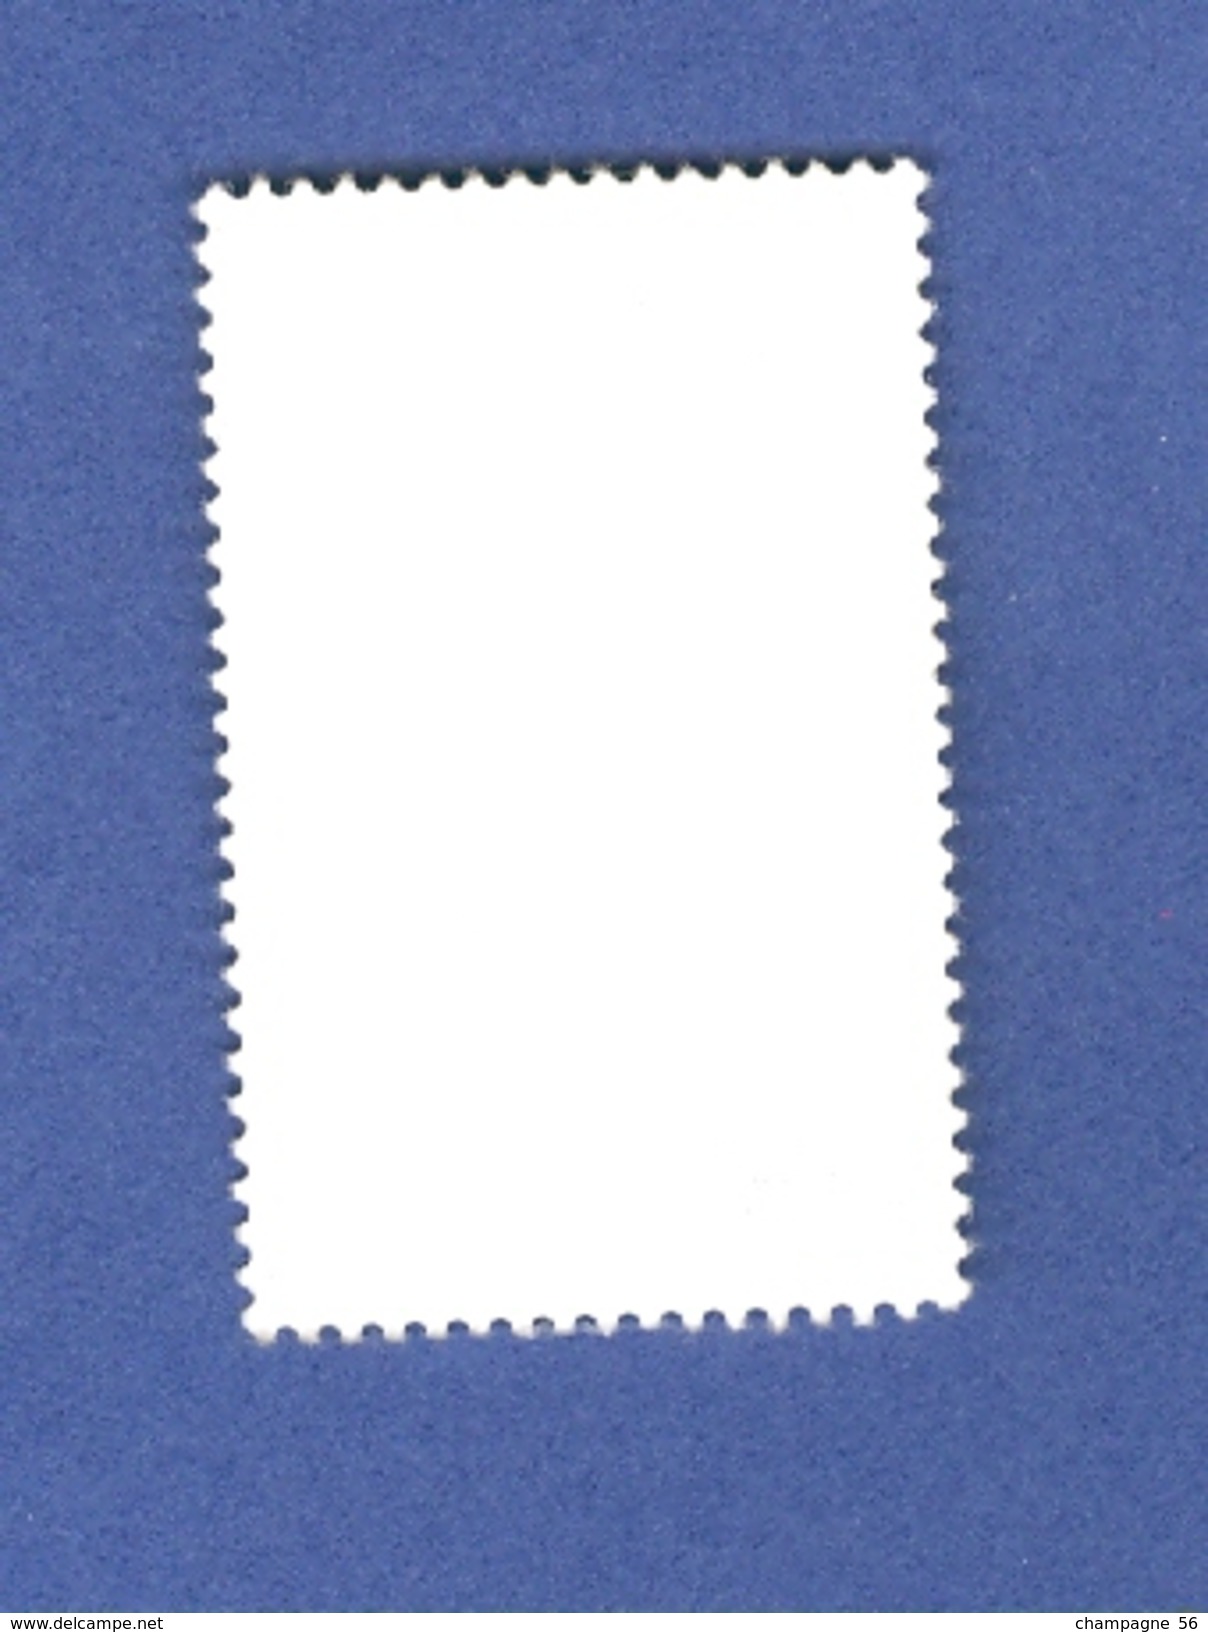 * 1995    N° 2960   LE LOUP ET L'AGNEAU  6 .6. 1996    OBLITÉRÉ - Used Stamps